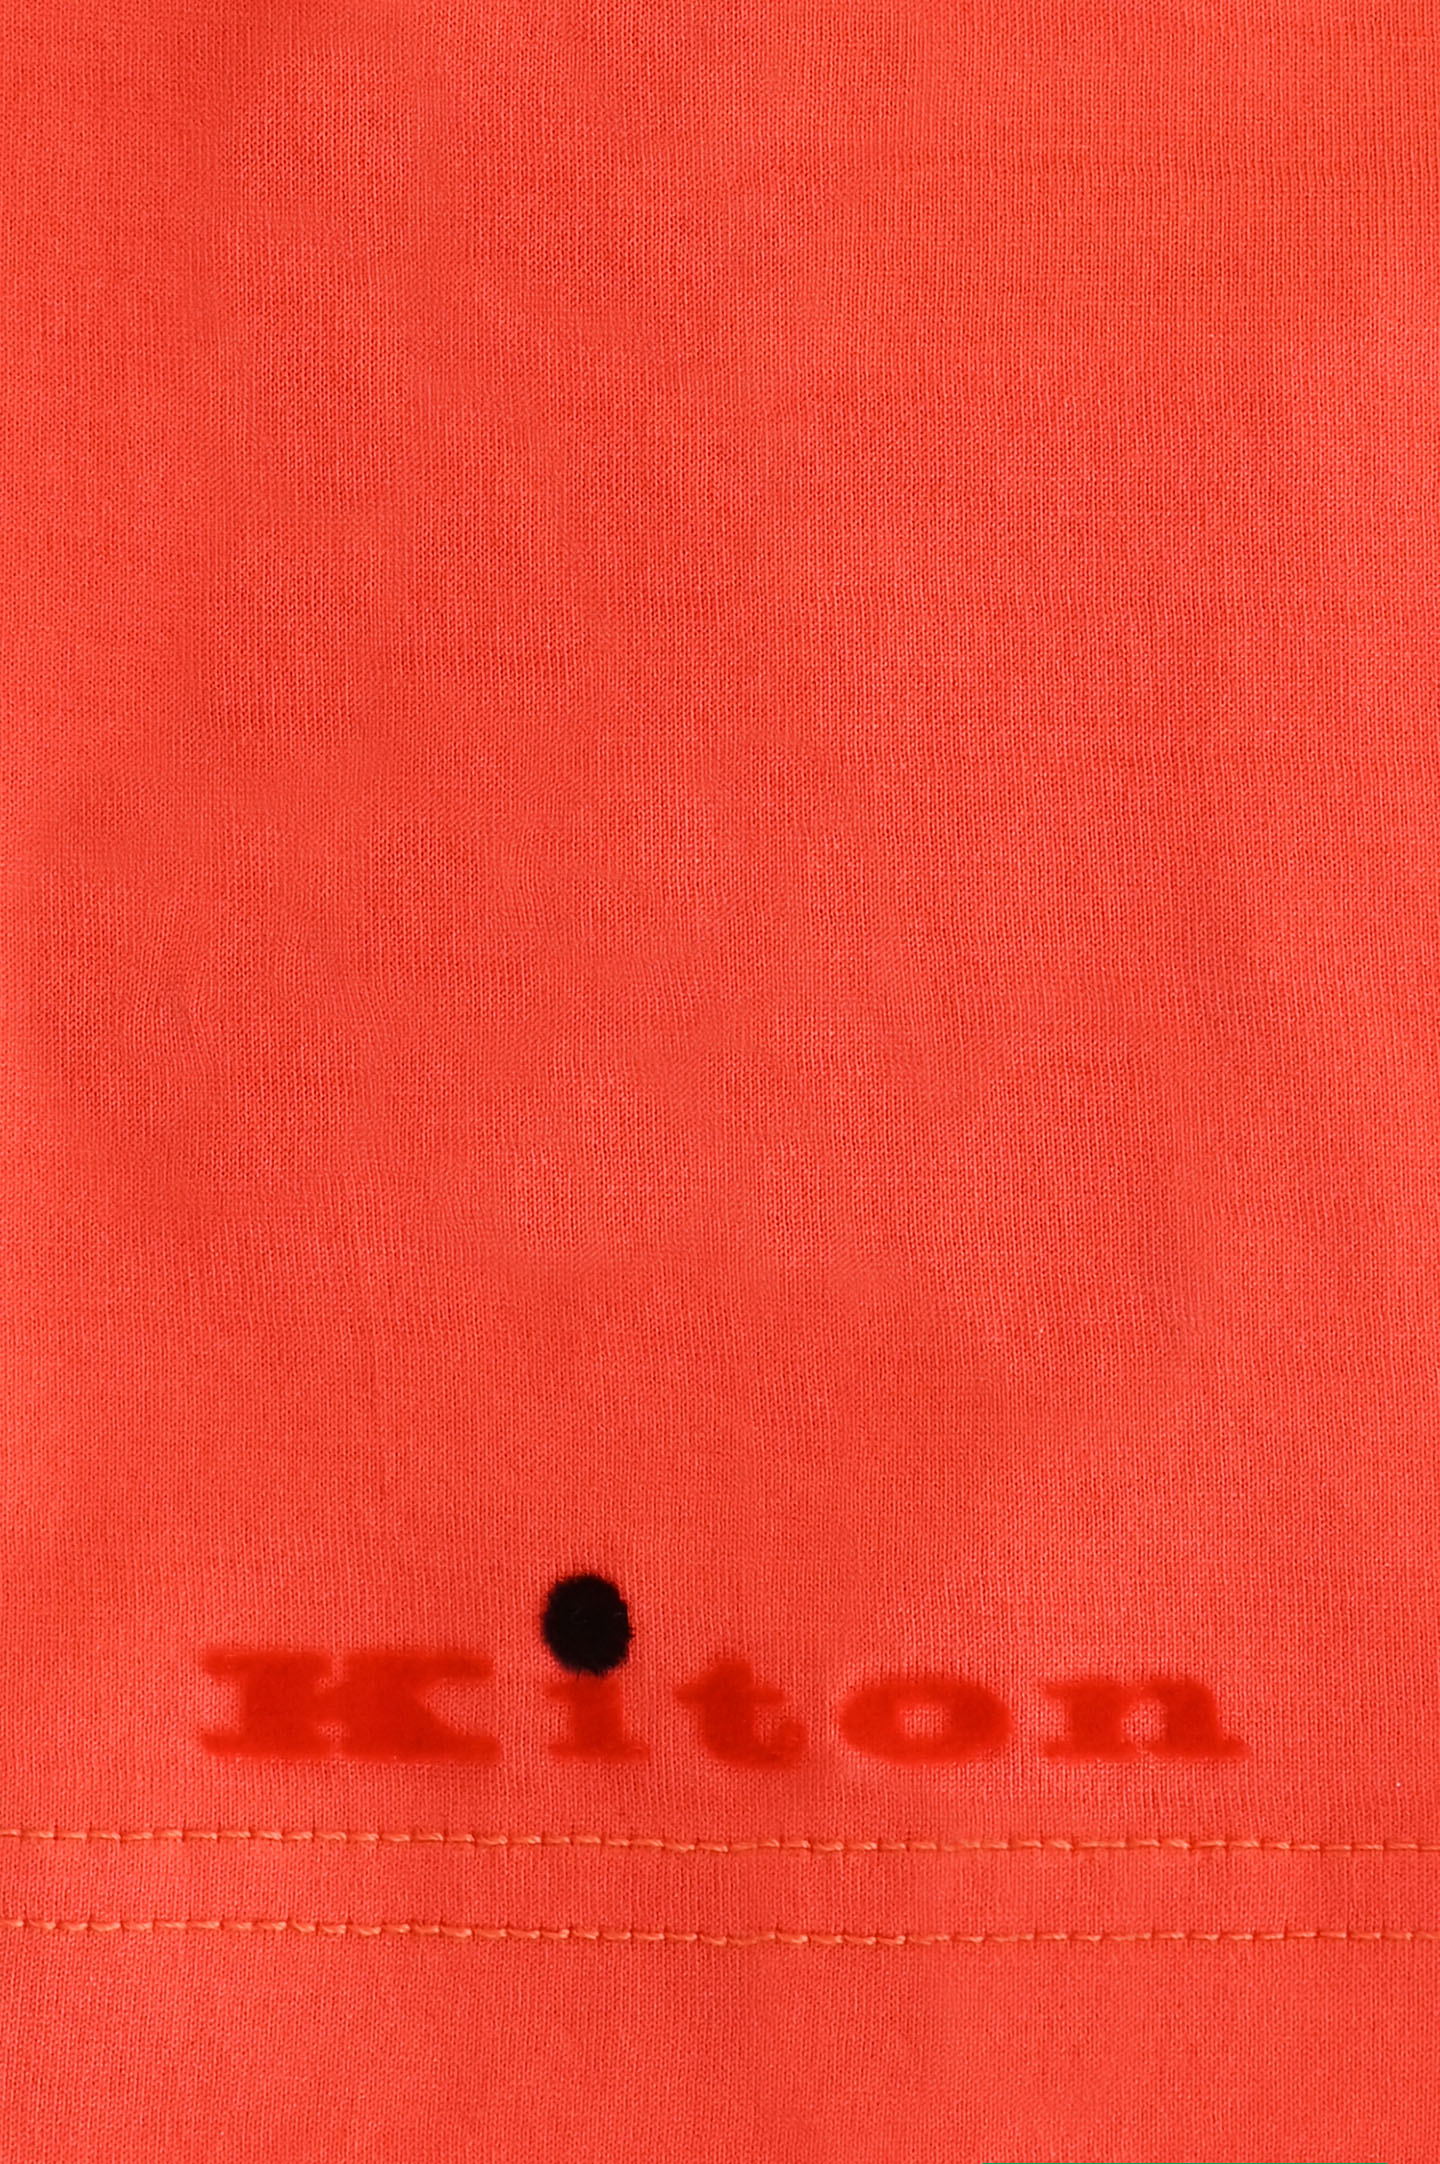 Хлопковая футболка KITON UMK1165K22, цвет: Красный, Мужской